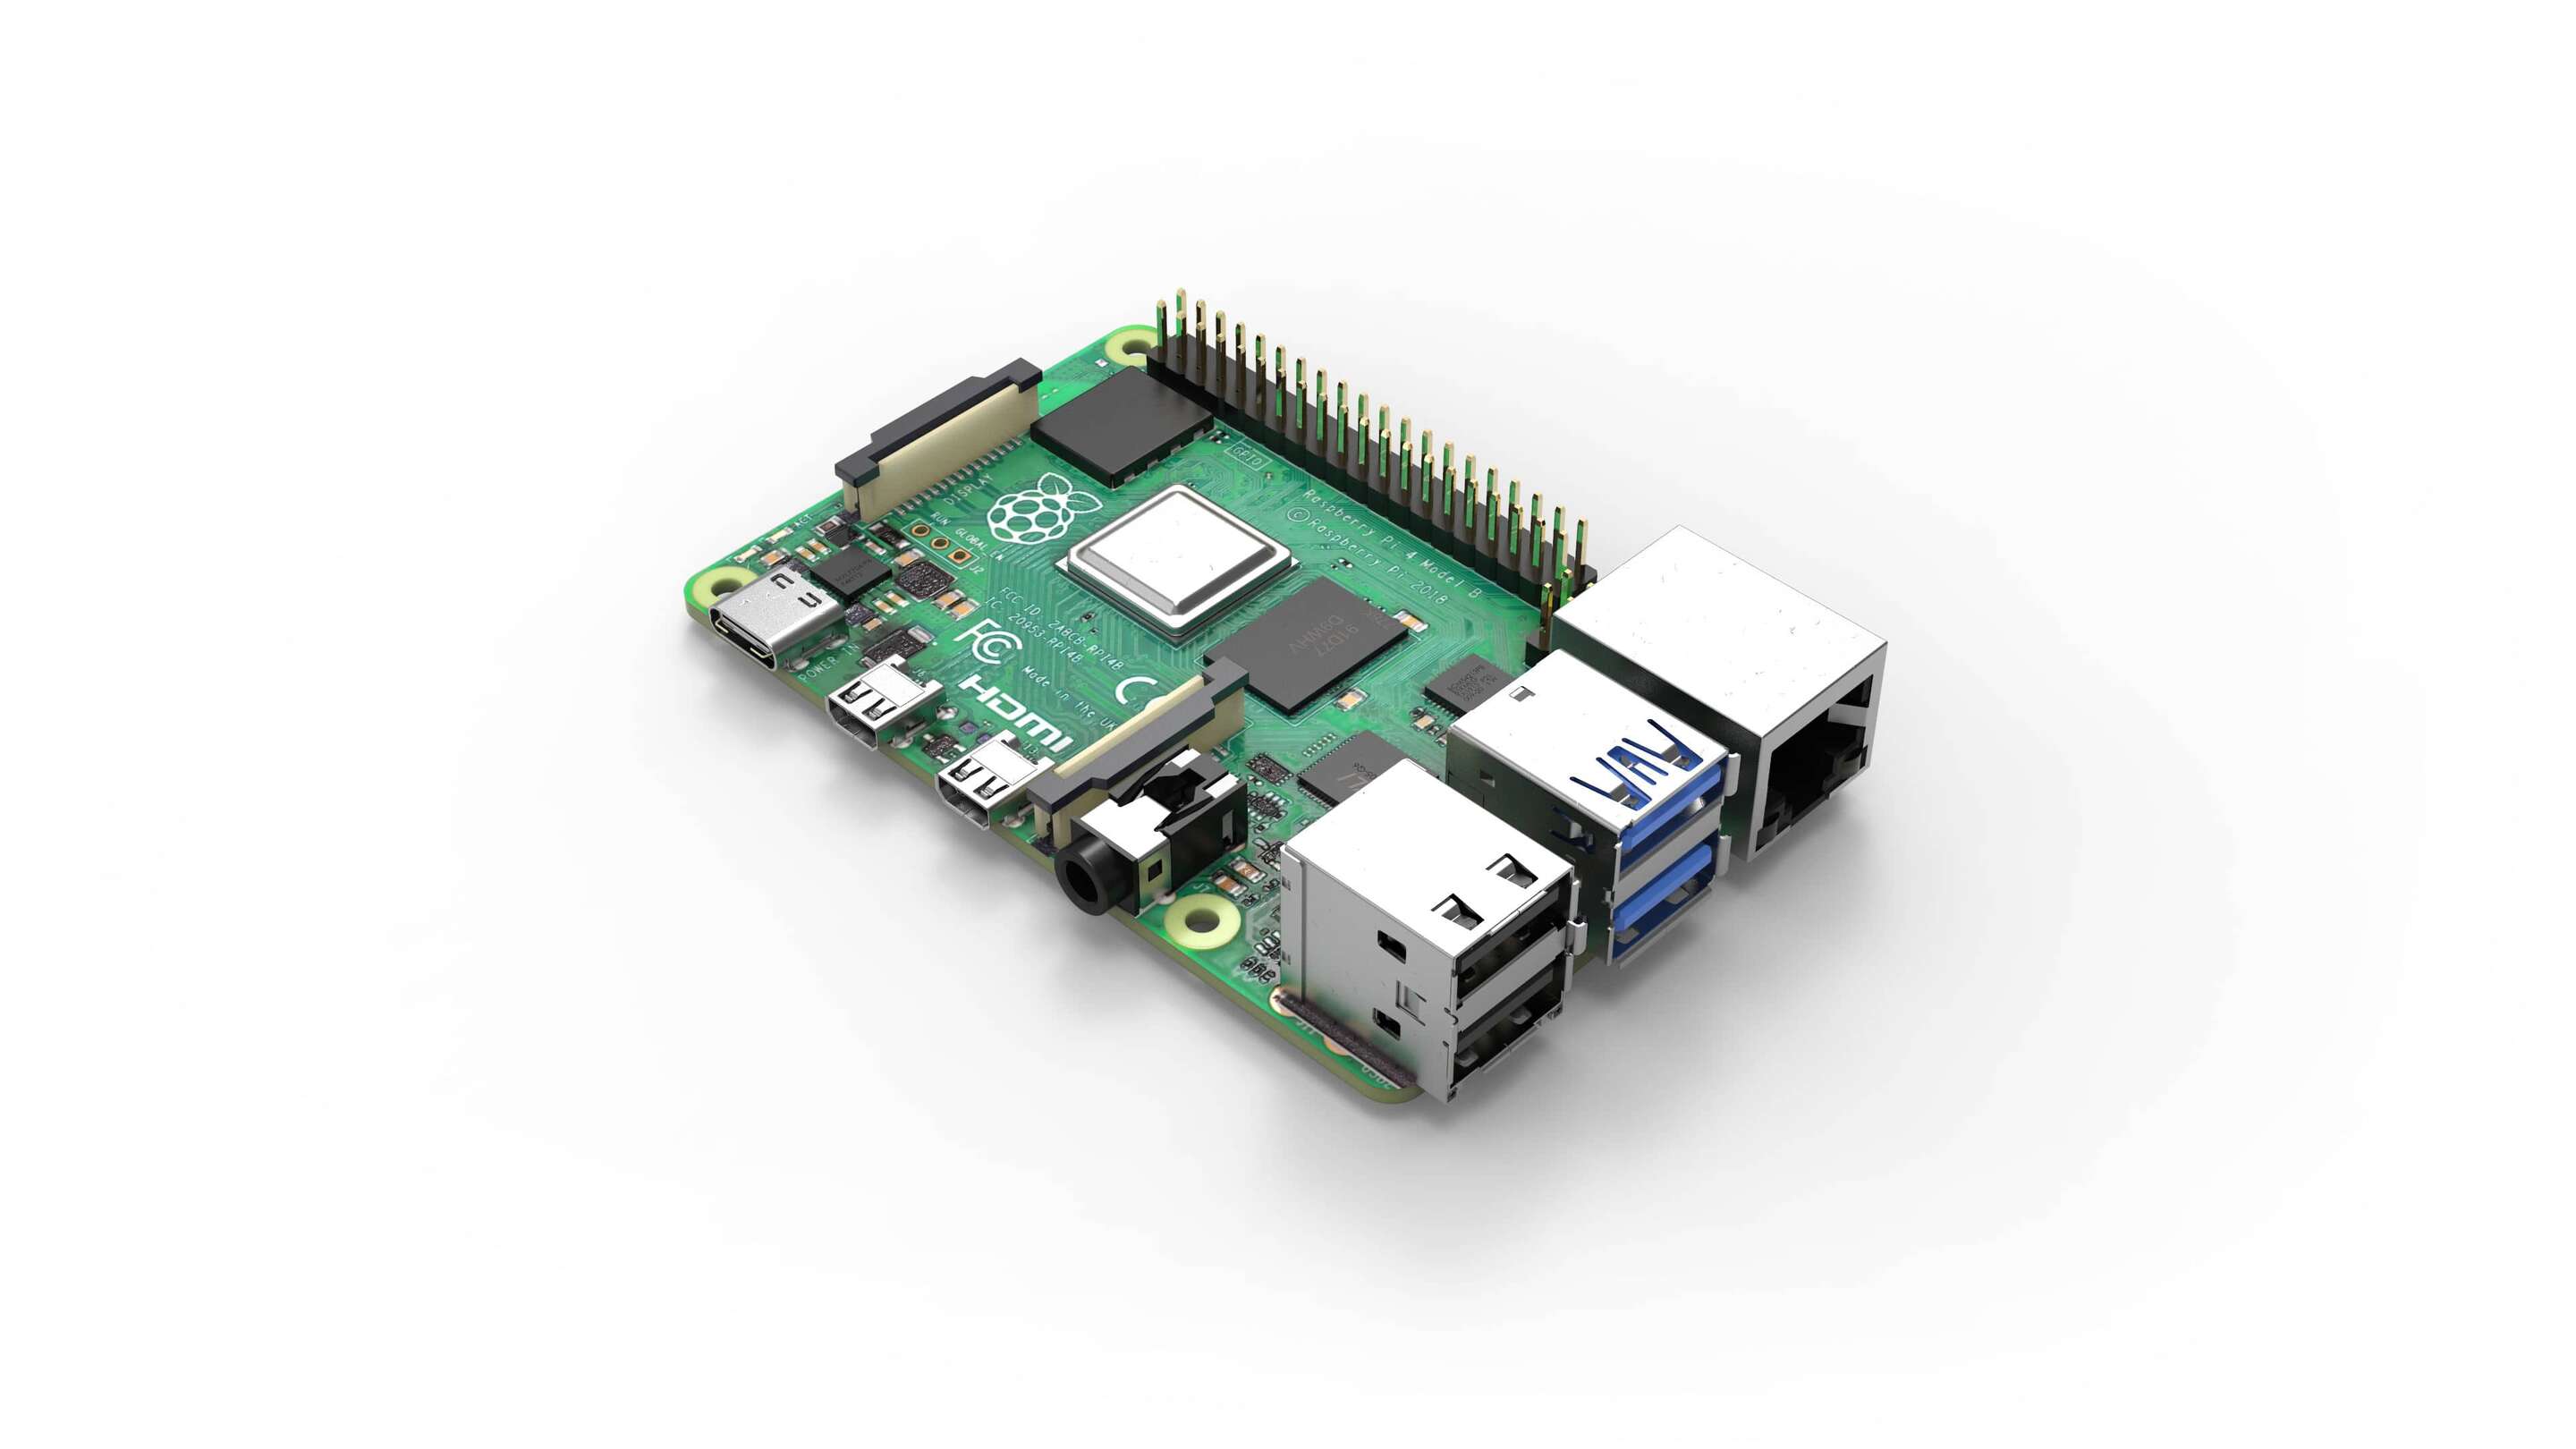 Moniteur industriel - Moniteur tactile Raspberry 4 intégré une carte de circuit imprimé verte avec de nombreux ports